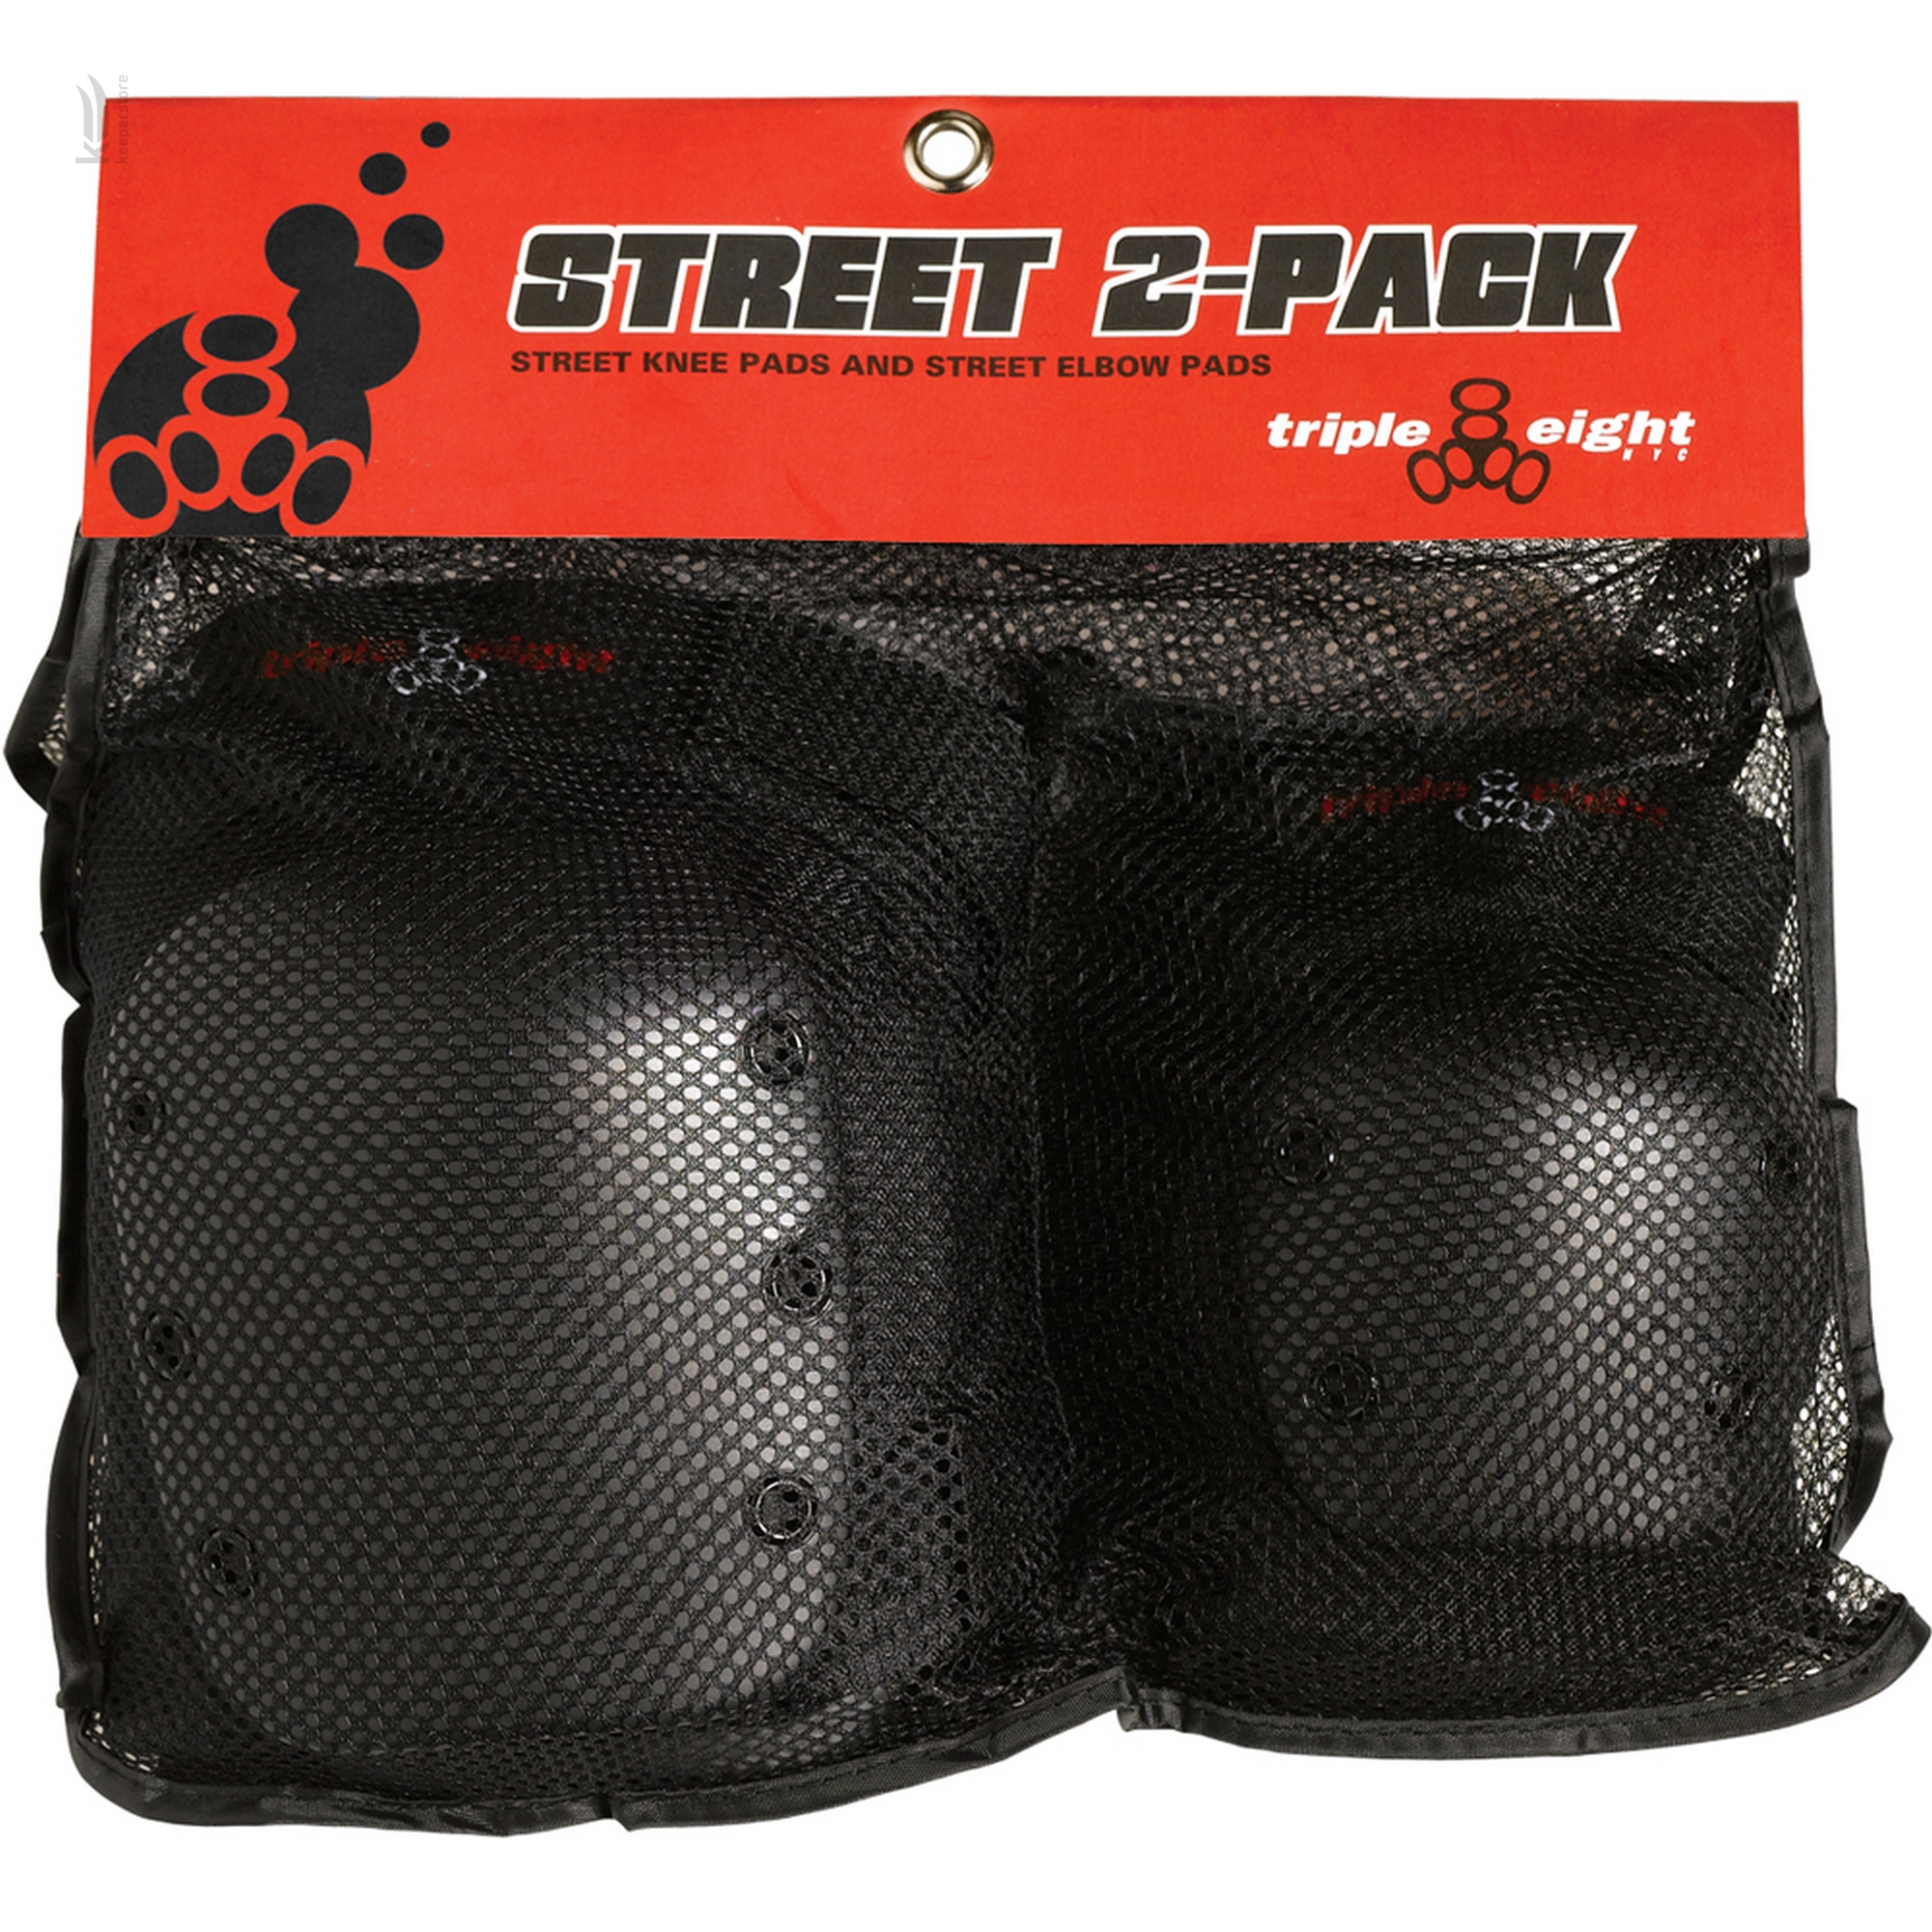 Захист для роликів Triple8 Street 2-Pack (S)